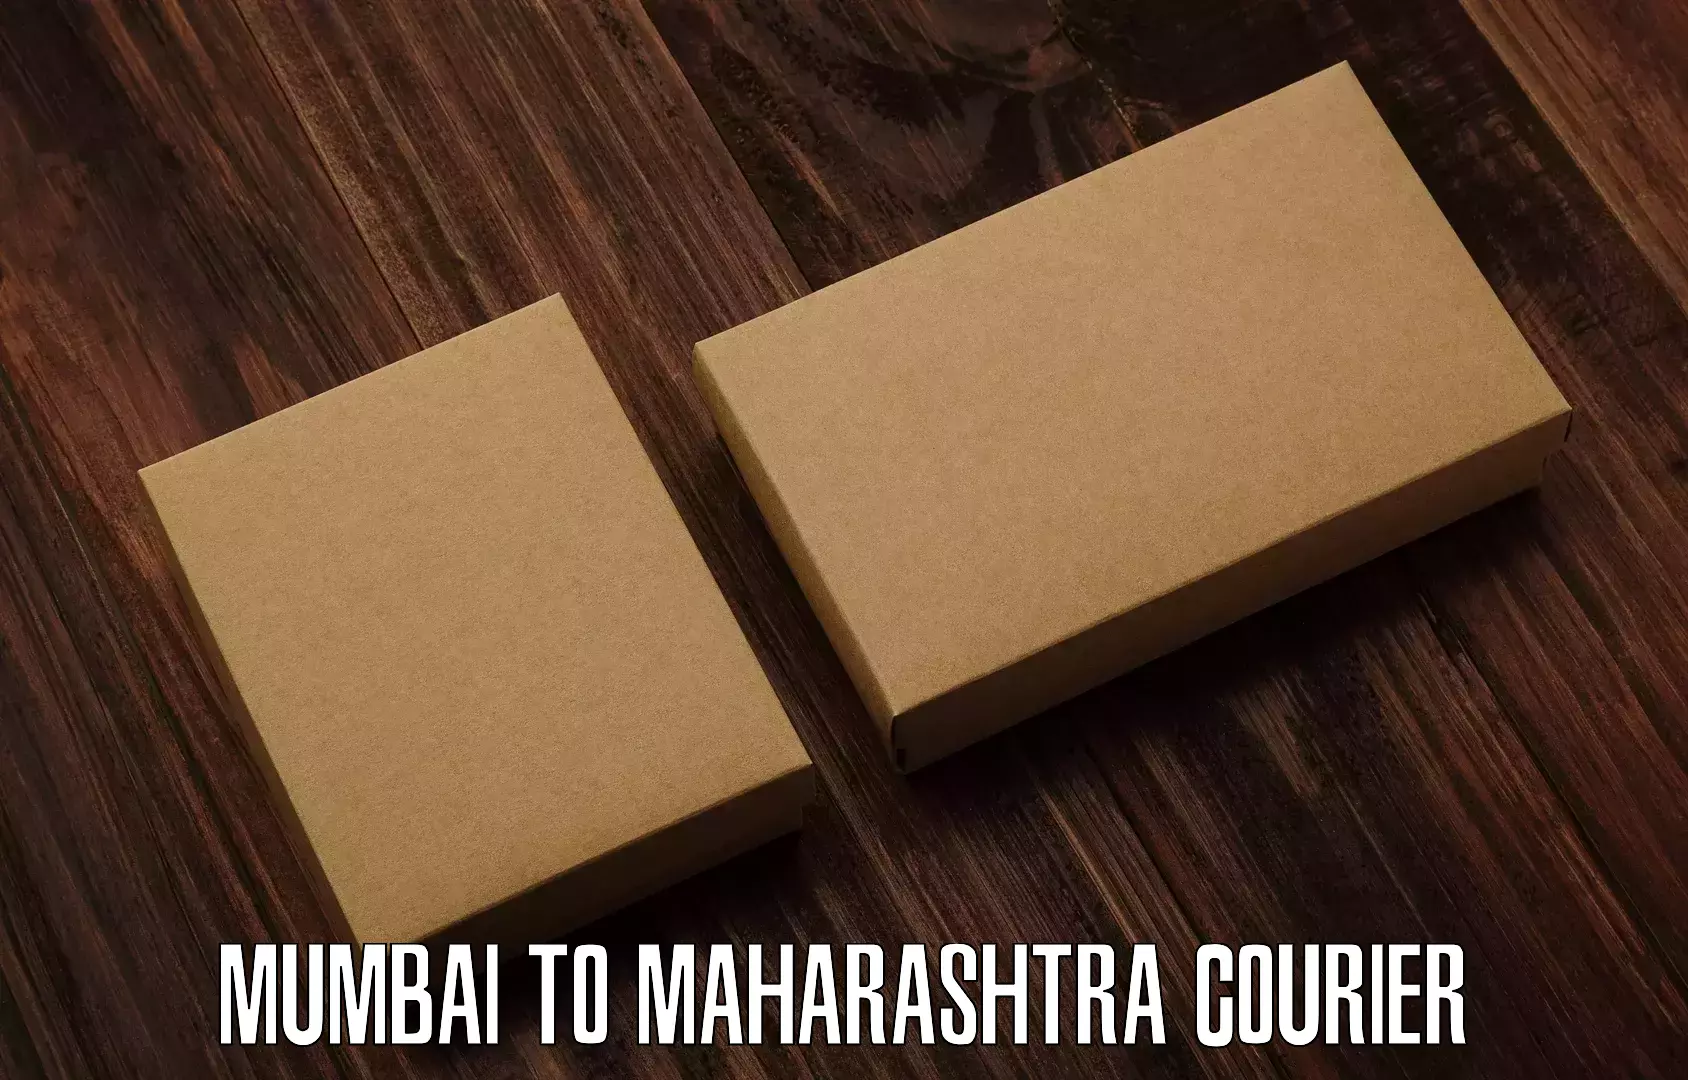 Express courier facilities Mumbai to Vasai